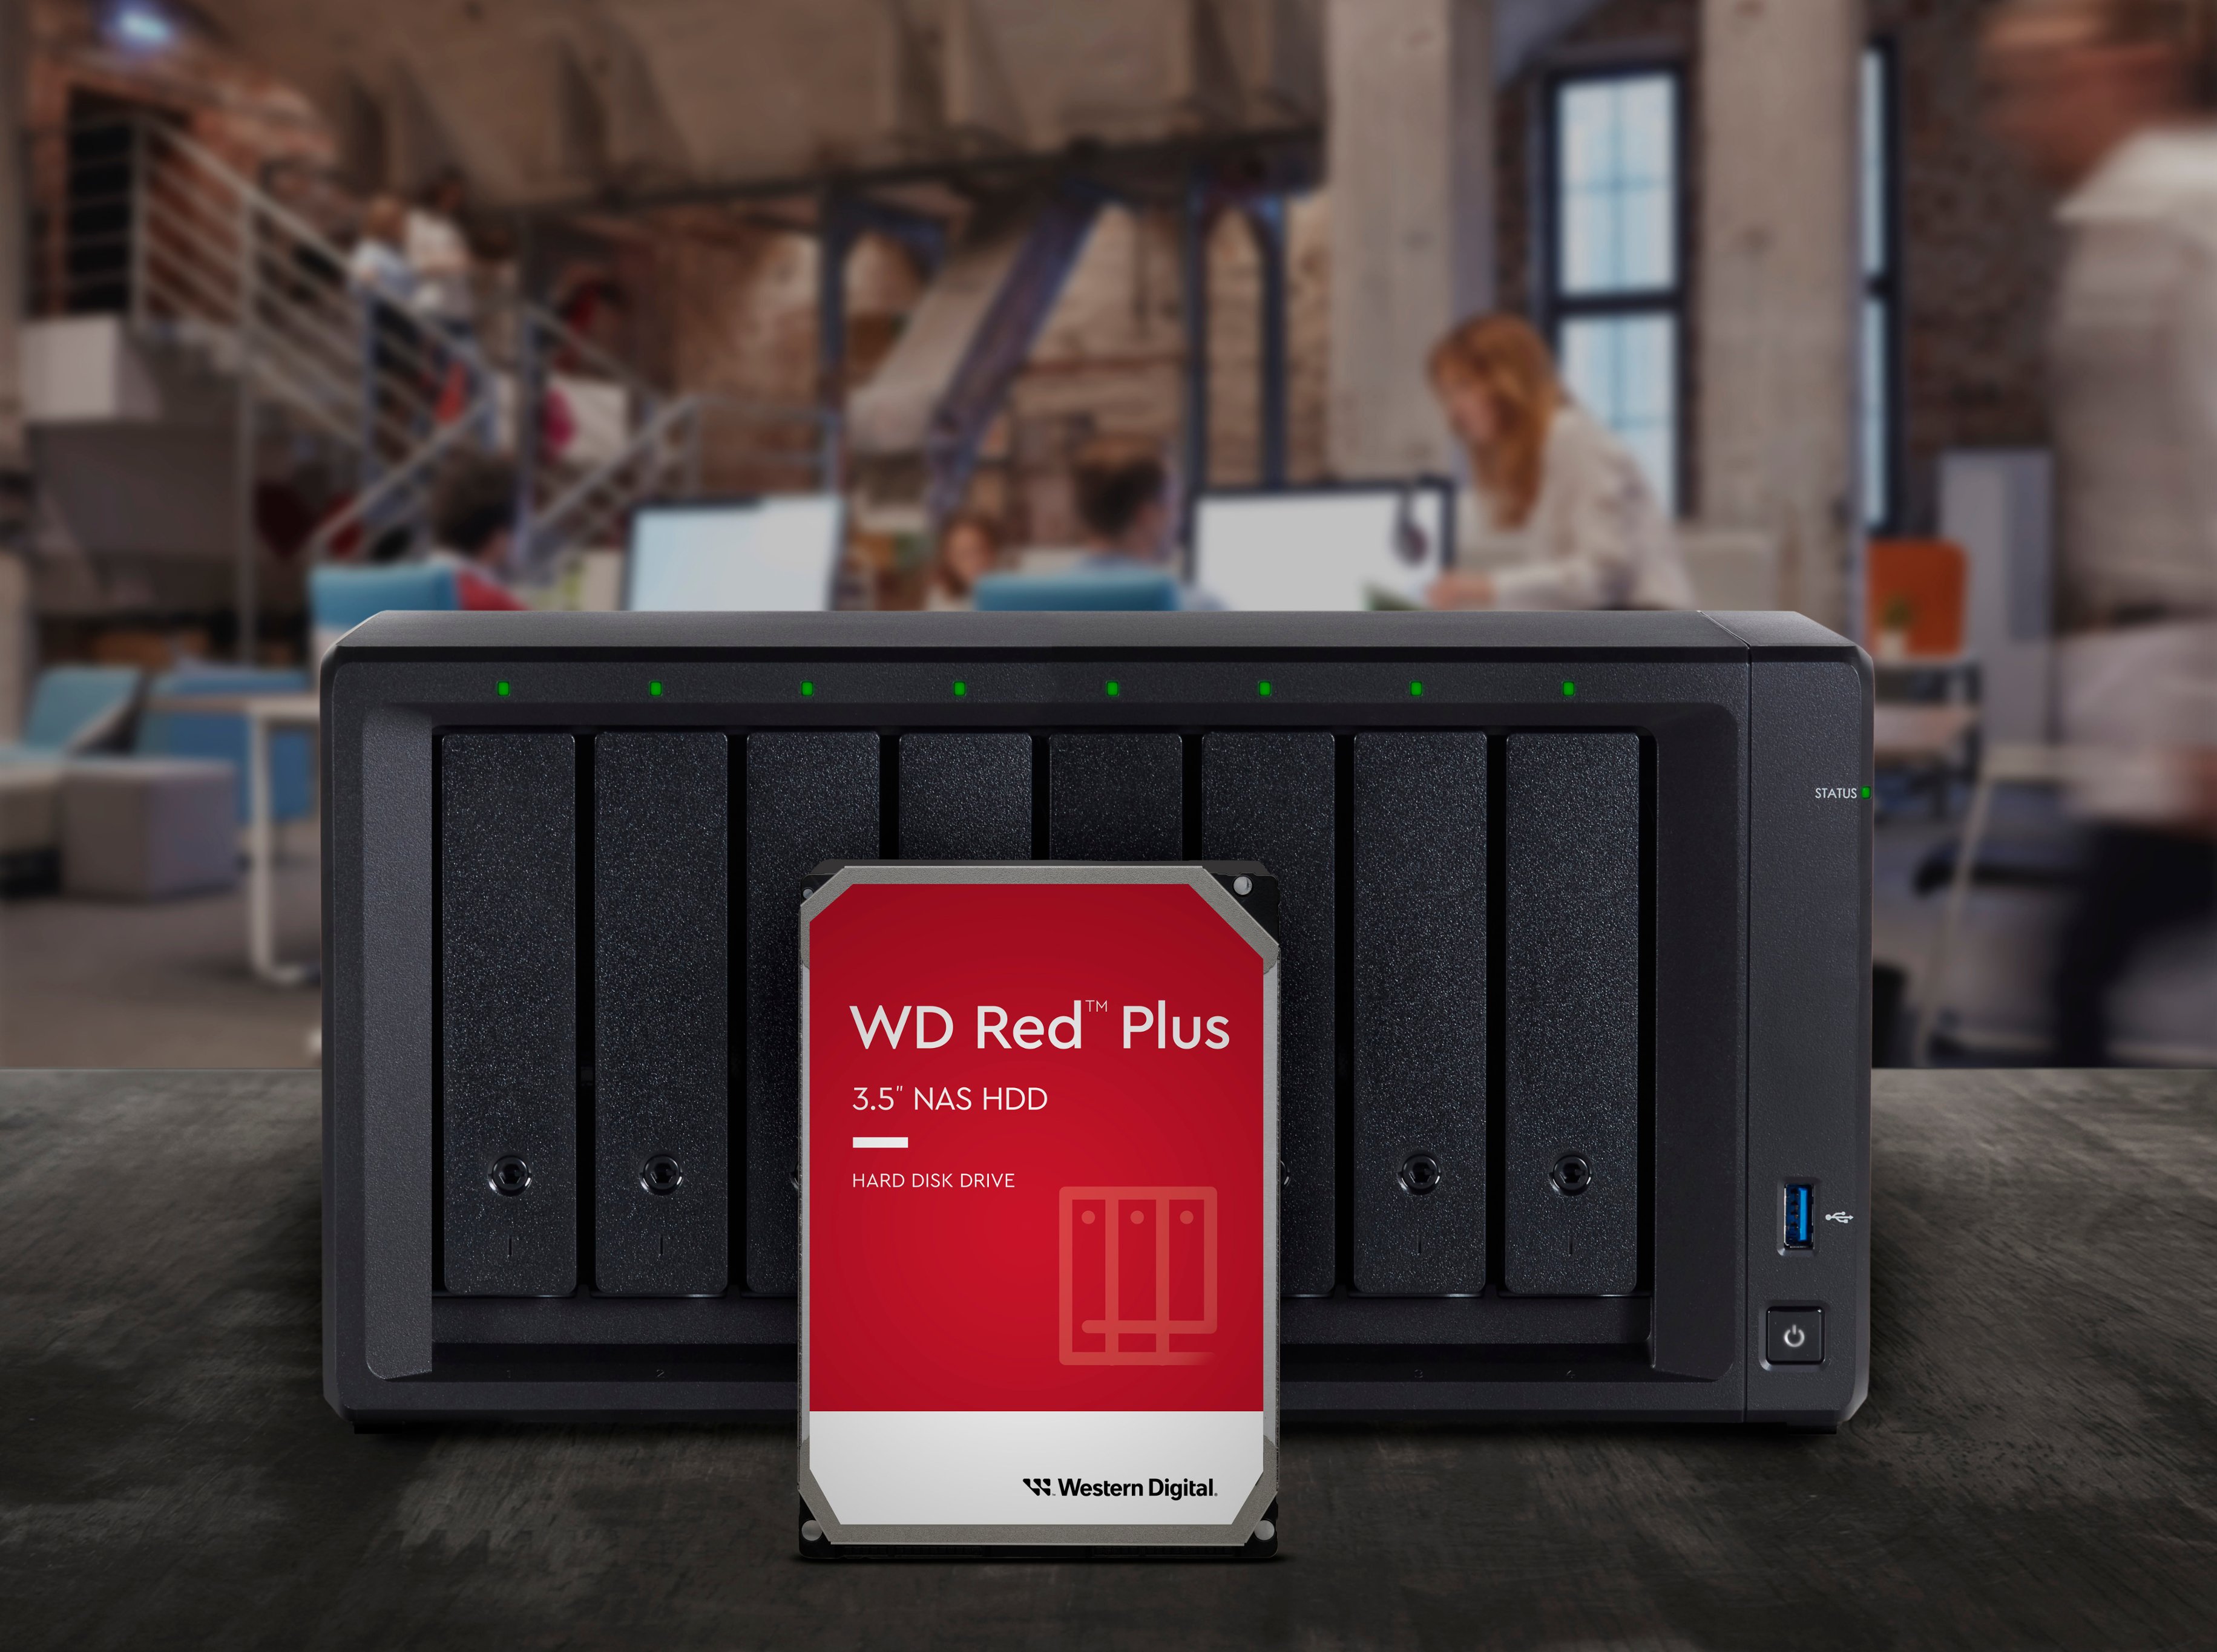 Angreb lige Repræsentere WD Red Plus 8TB Internal SATA NAS Hard Drive for Desktops  WDBC9V0080HH1-WRSN - Best Buy